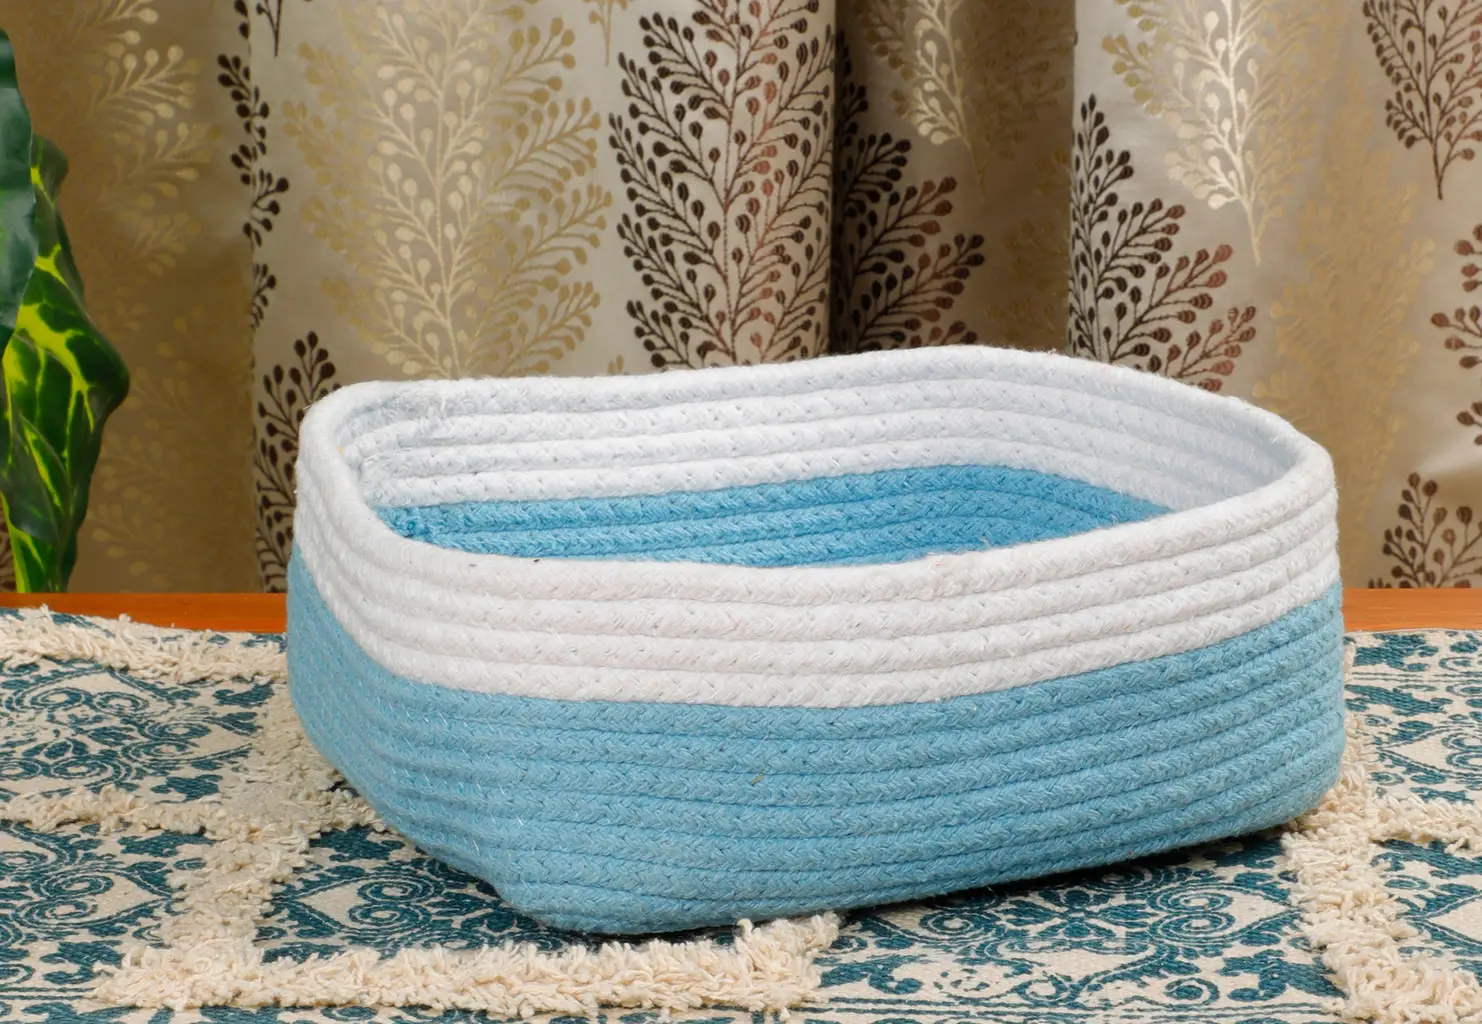 Cotton Shelf Basket Rectangular Dual Bright Color, 10x8.5x4, White, Sky Blue